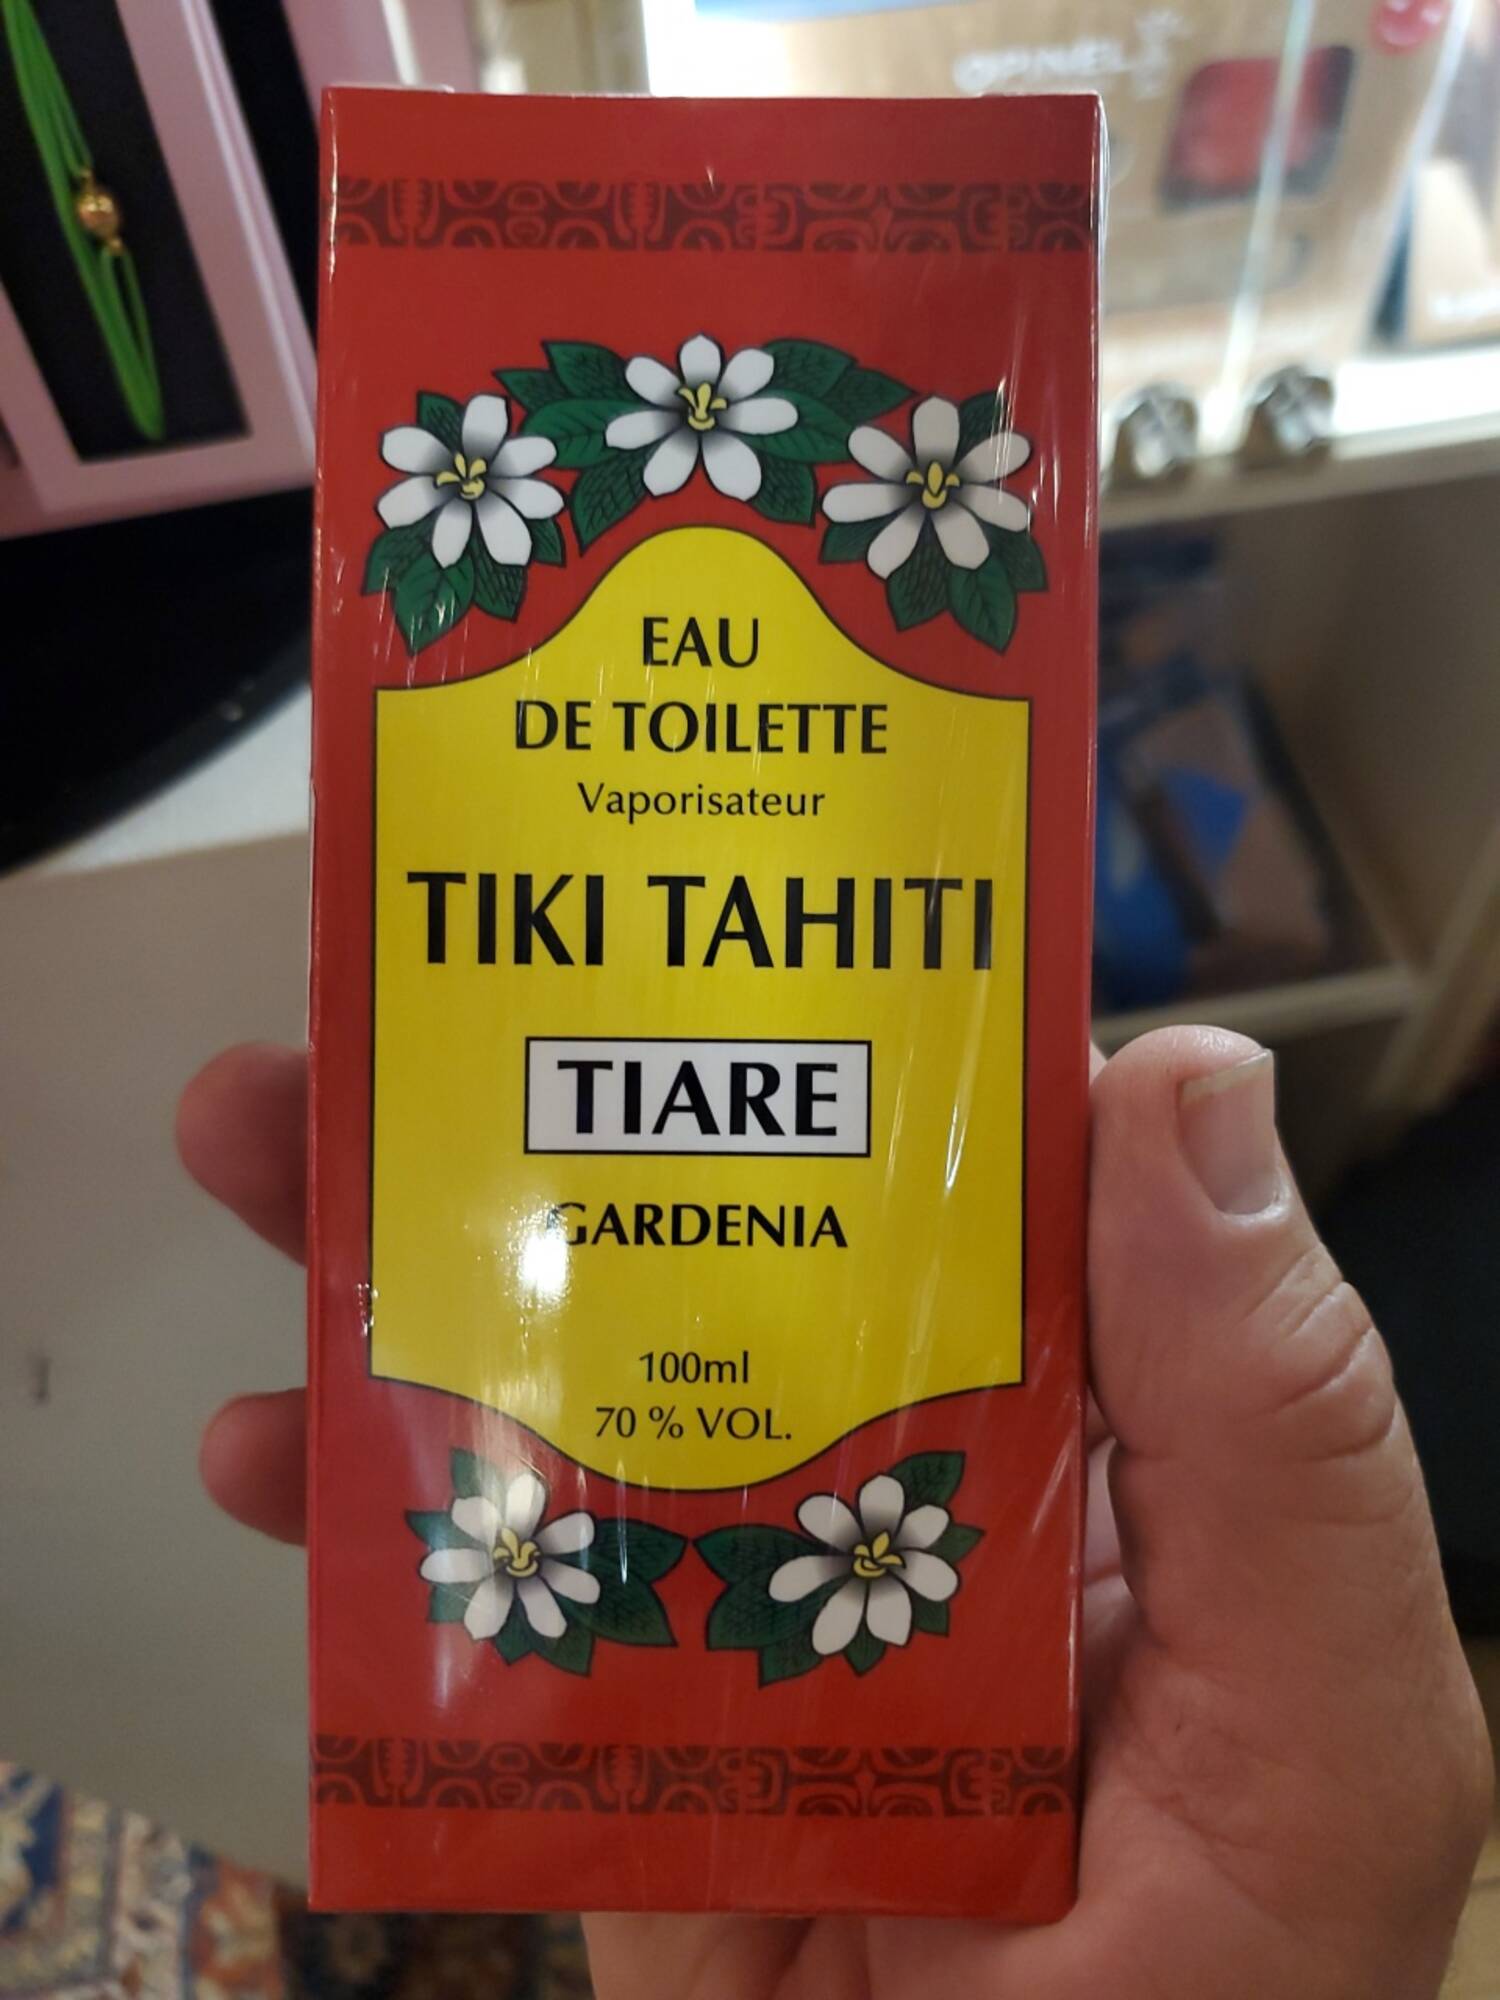 TIKI TAHITI - Eau de toilette tiaré 